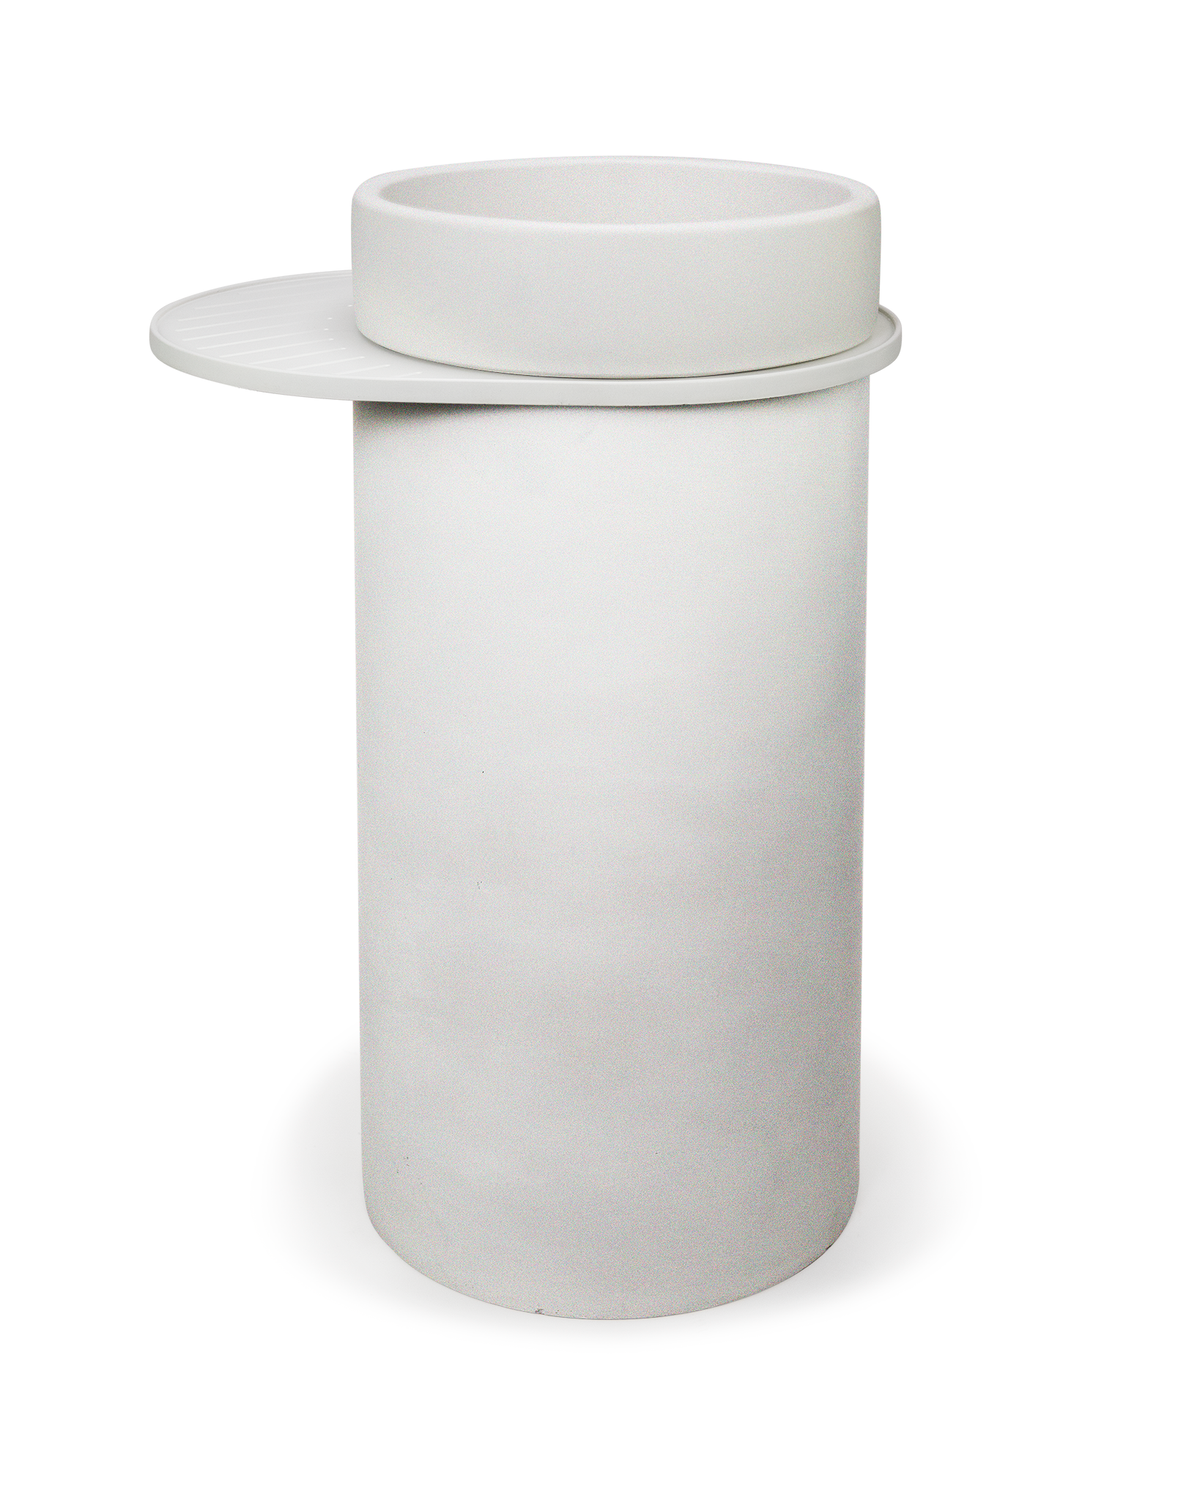 Cylinder - Bowl Basin (Ivory)